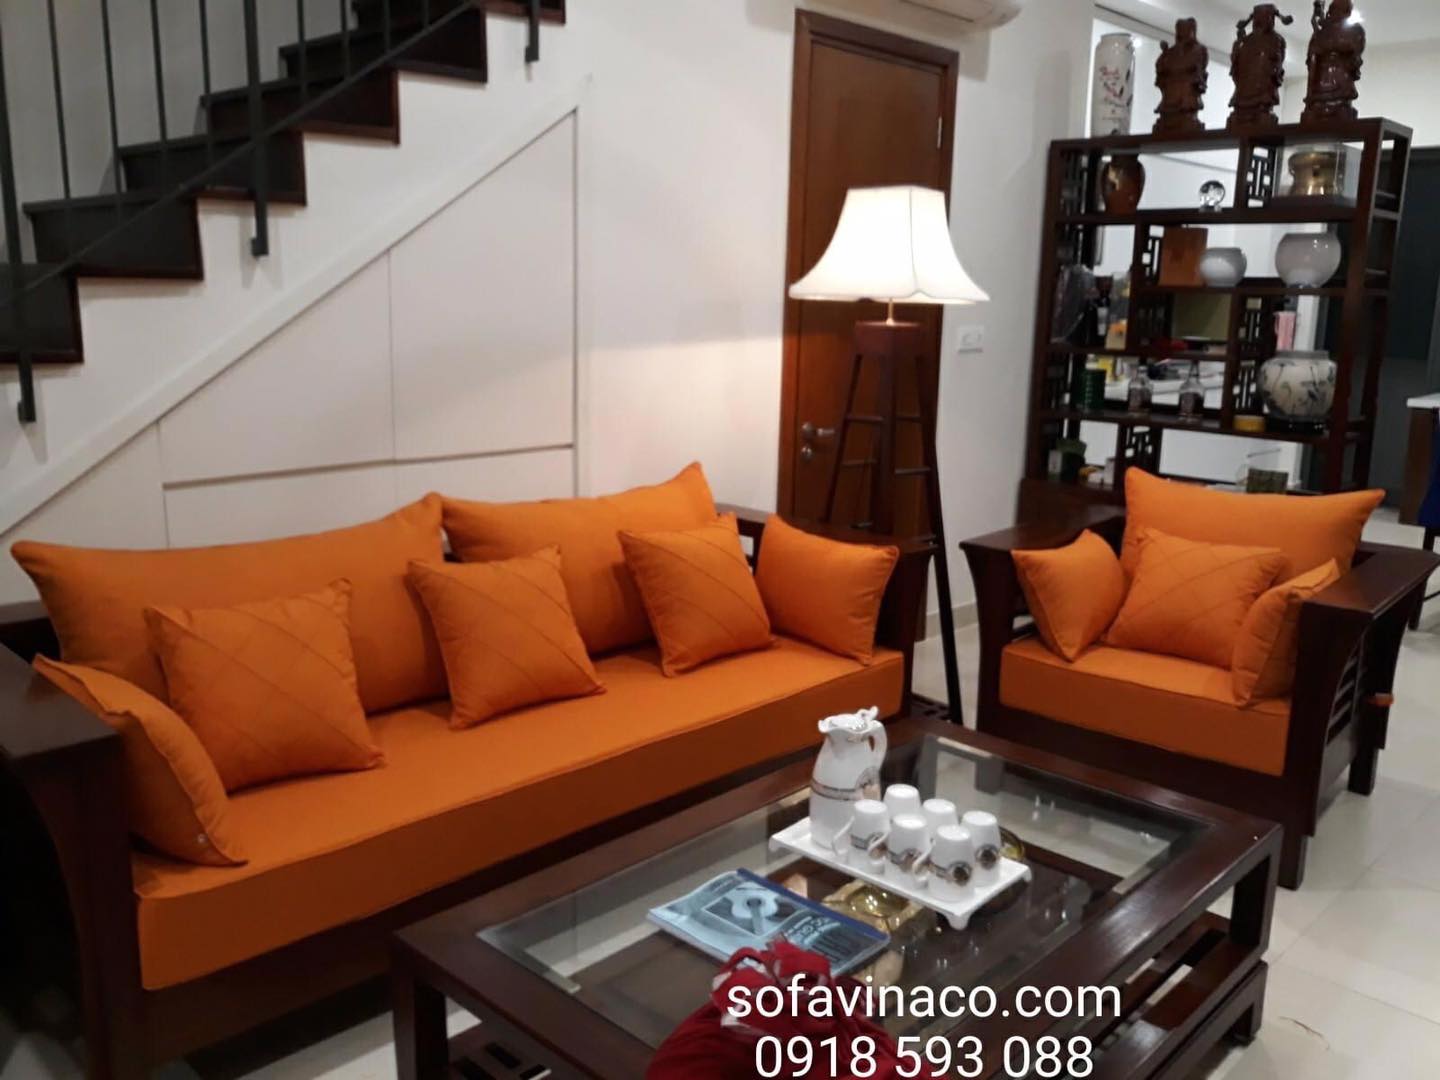 Bộ đệm ghế Grand Bois màu cam đẹp phù hợp với nền trắng tường